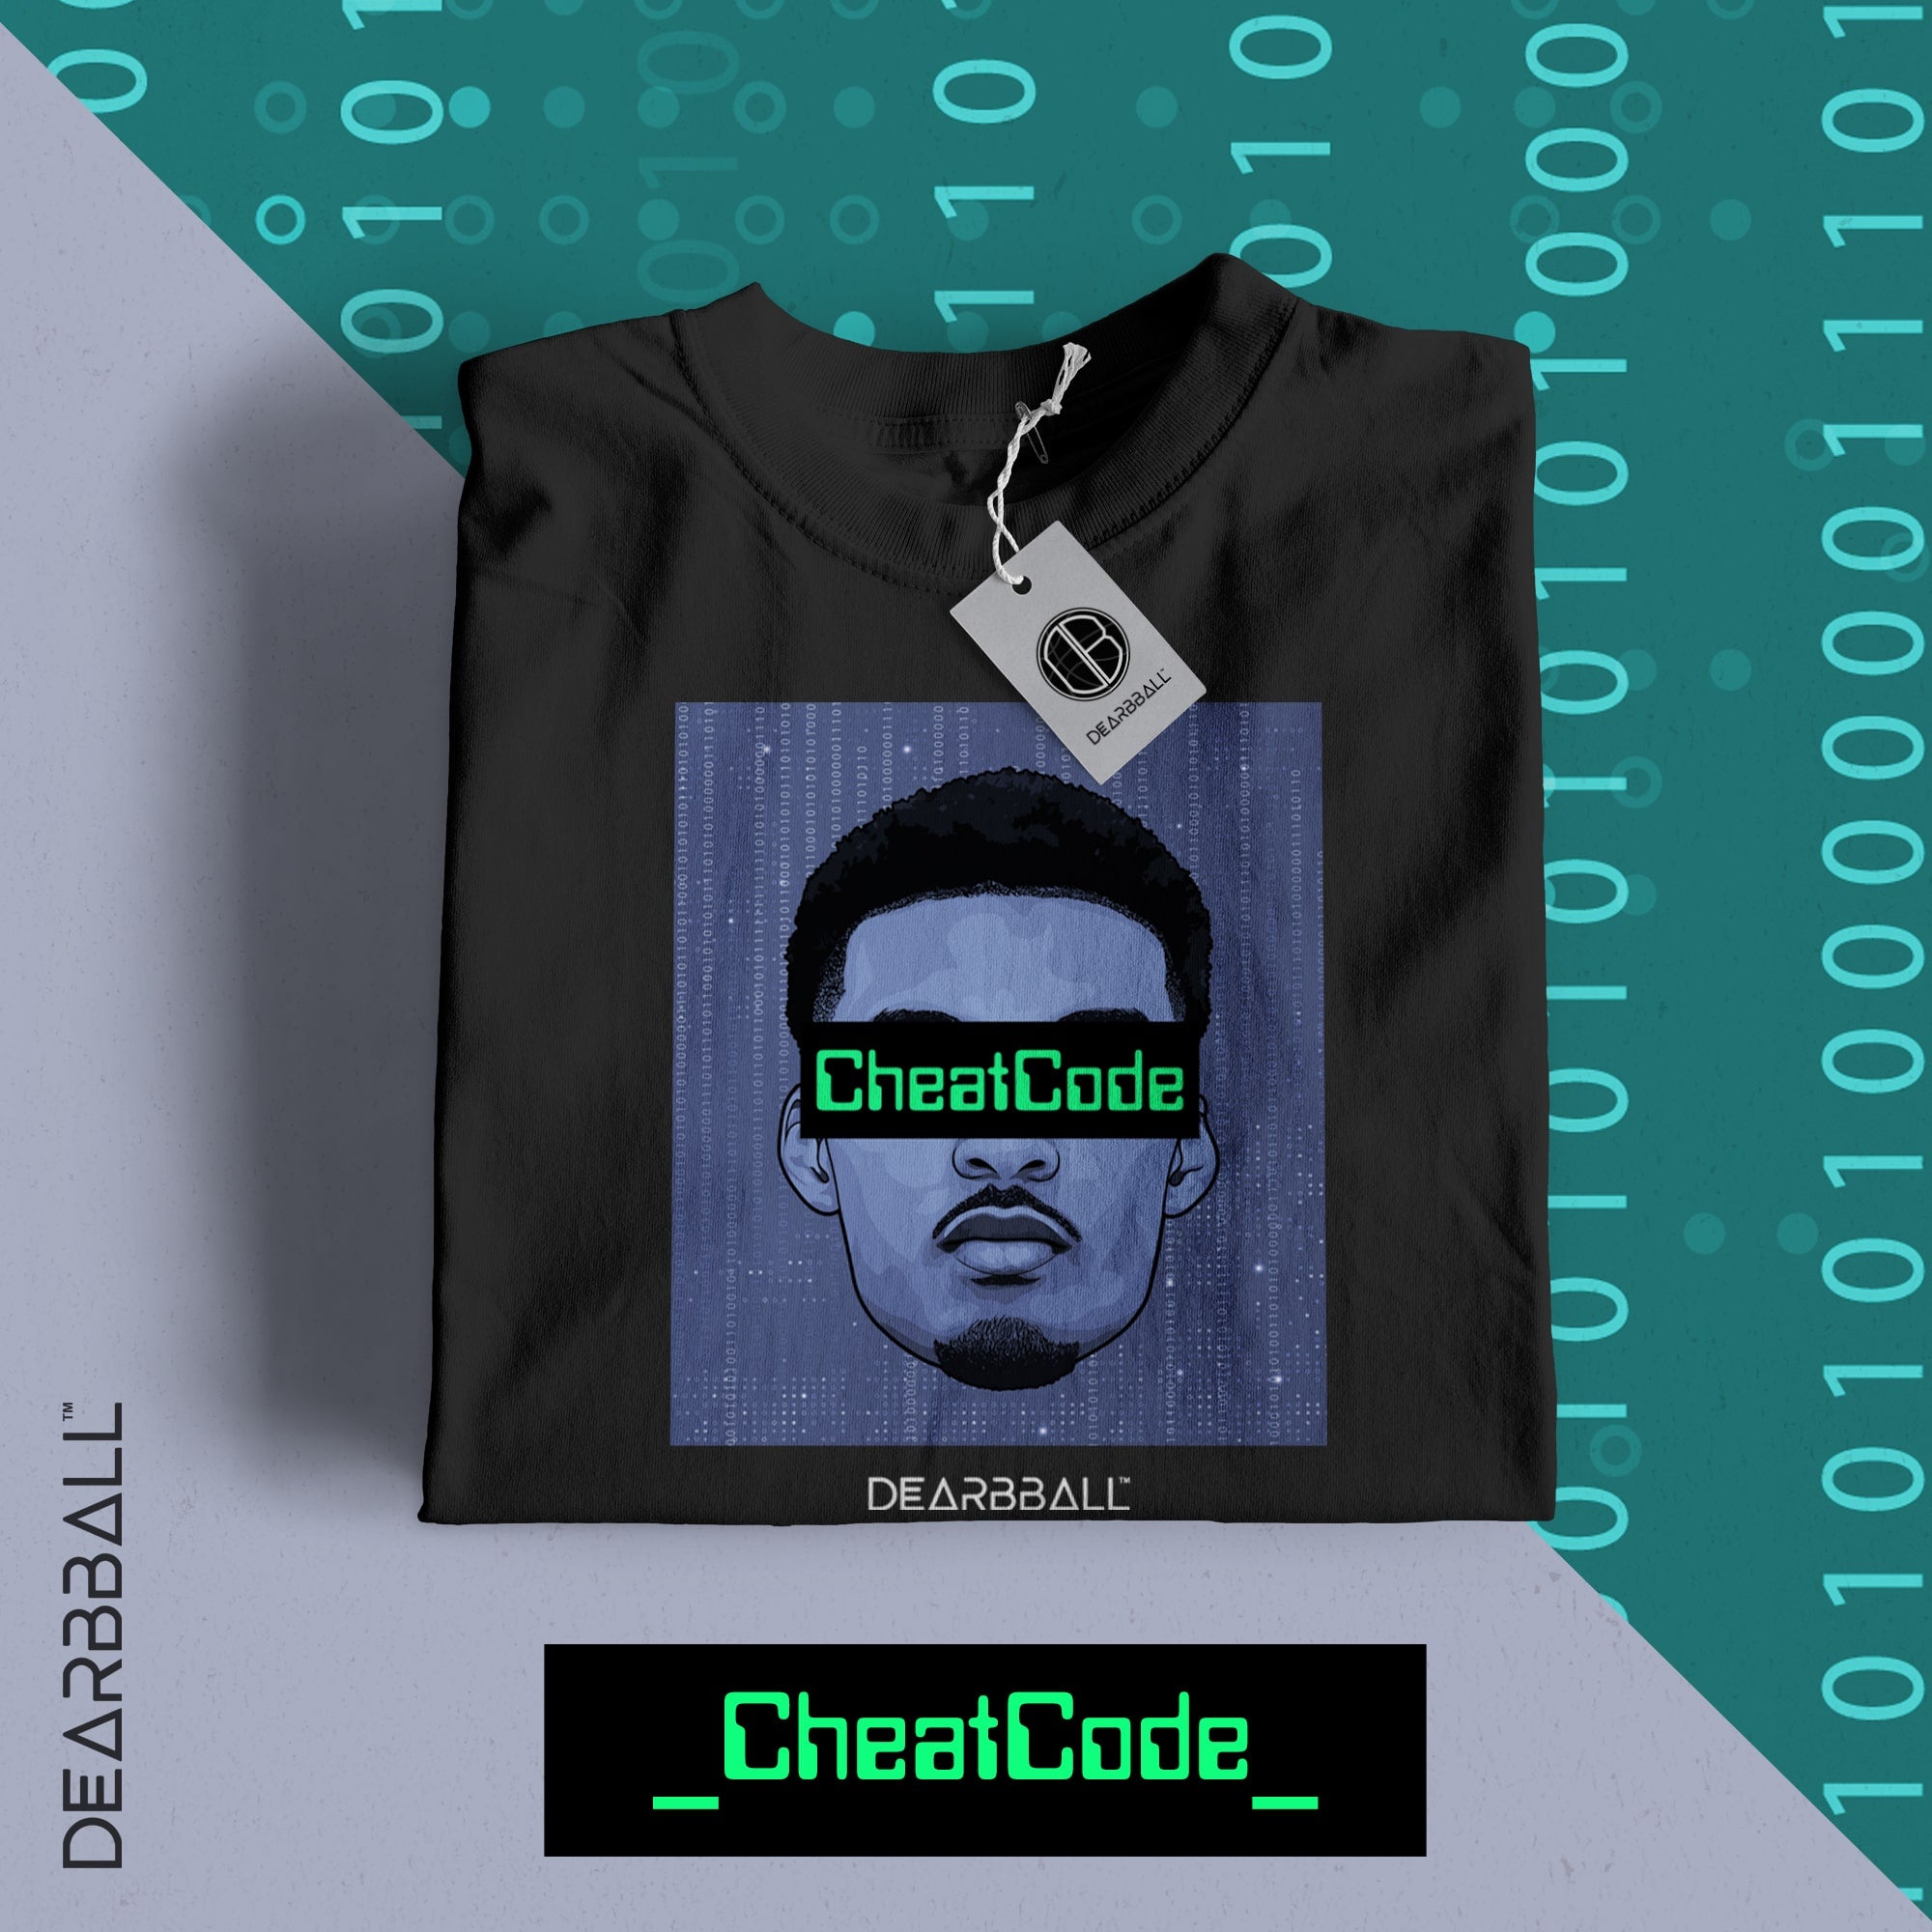 [BAMBINO] Maglietta DearBBall - Edizione limitata CheatCode